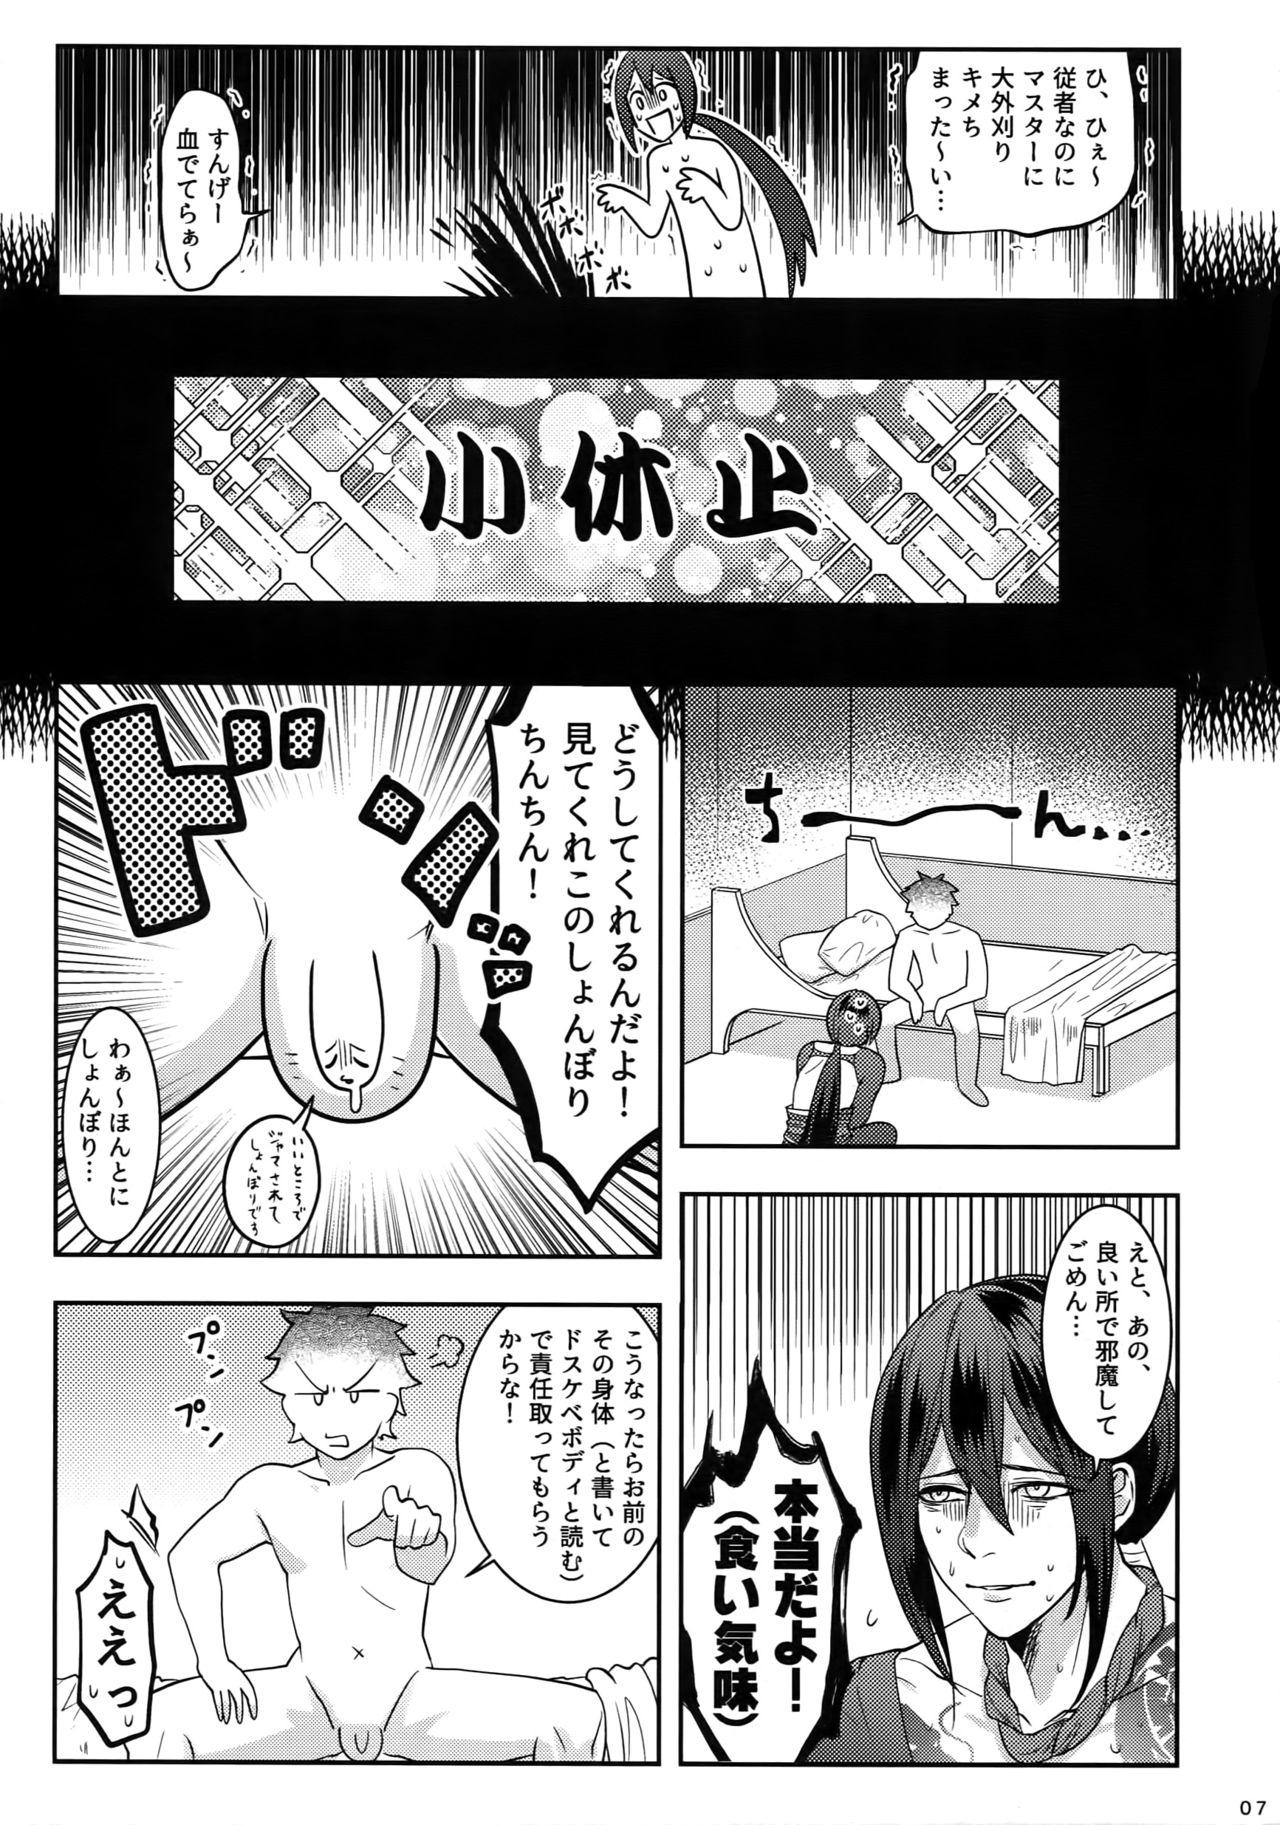 Tribbing Reiju no Mudazukai! Yarasete Kure Shinjuku no Assassin! - Fate grand order Shavedpussy - Page 6